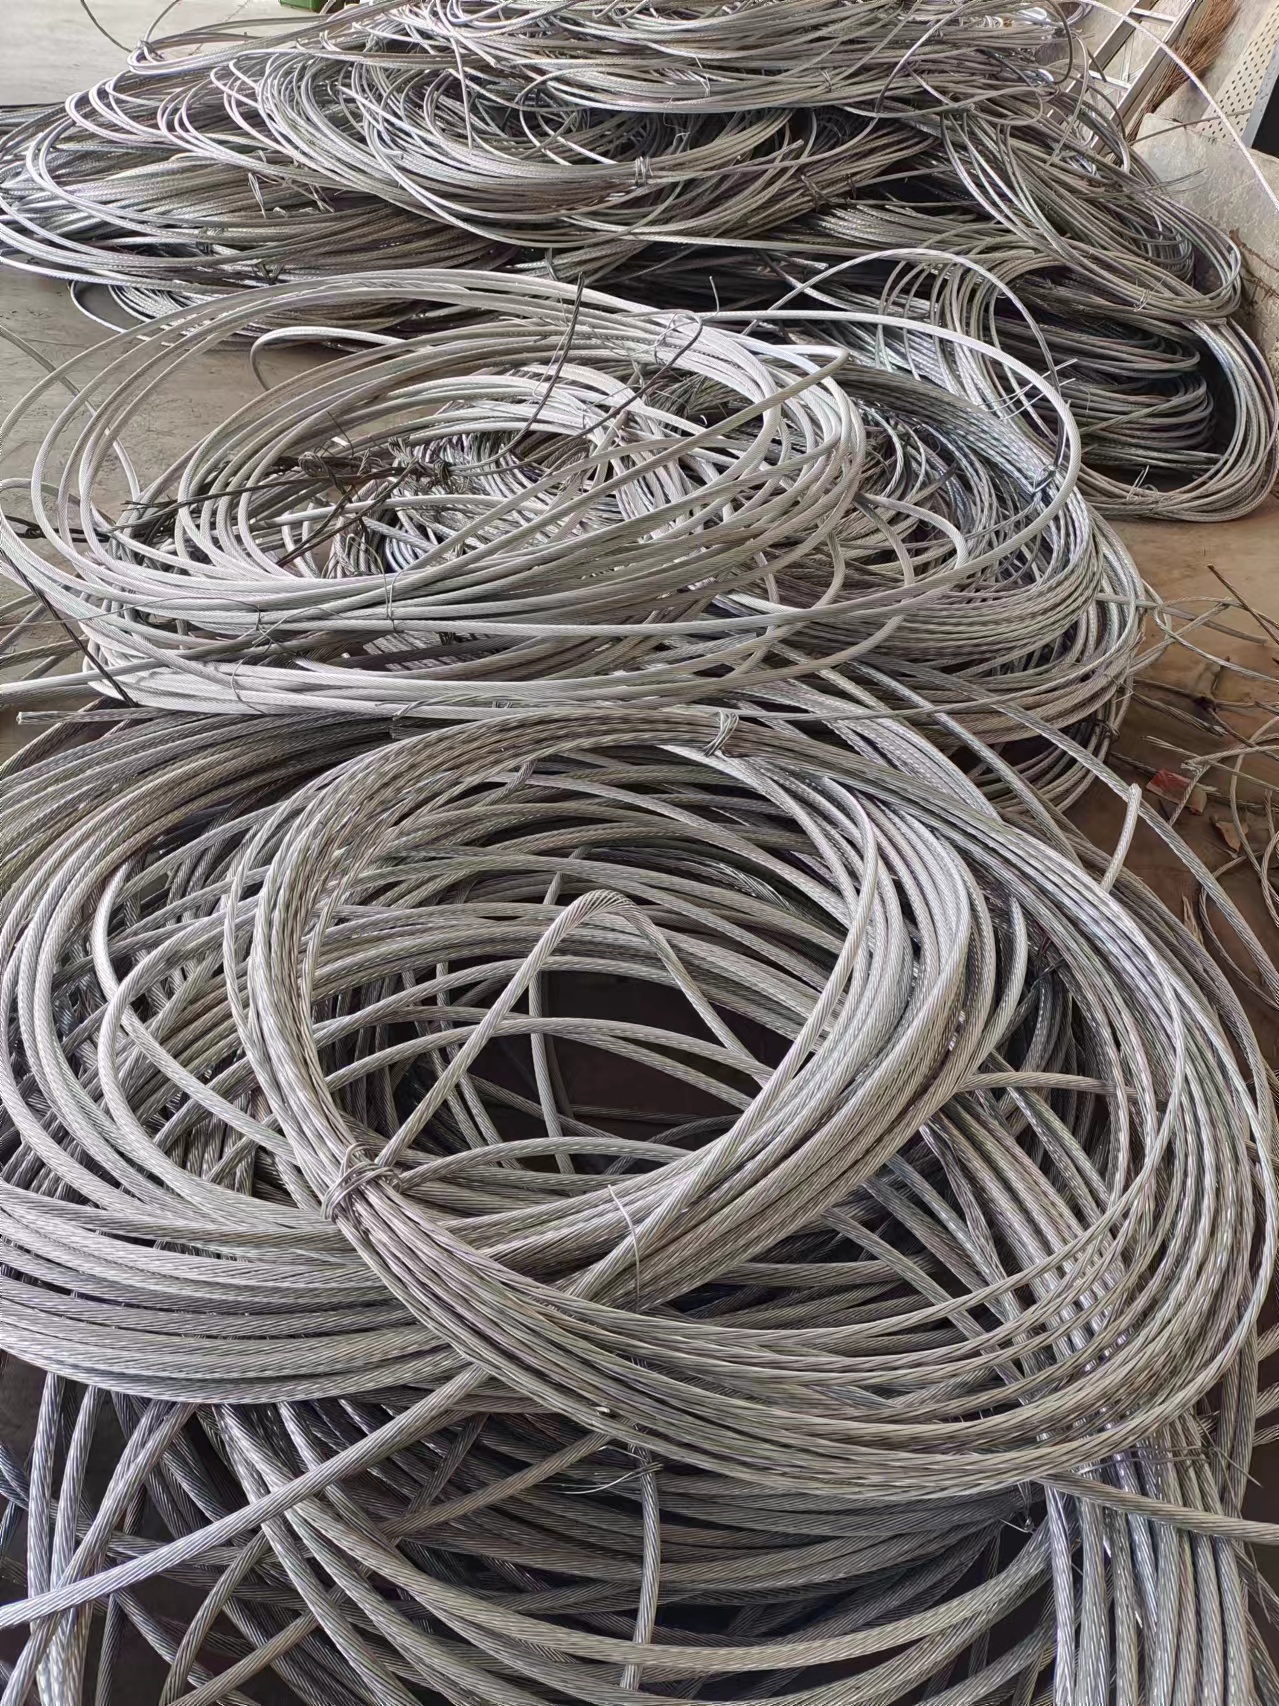 各种电线电缆回收 海缆回收当场结算